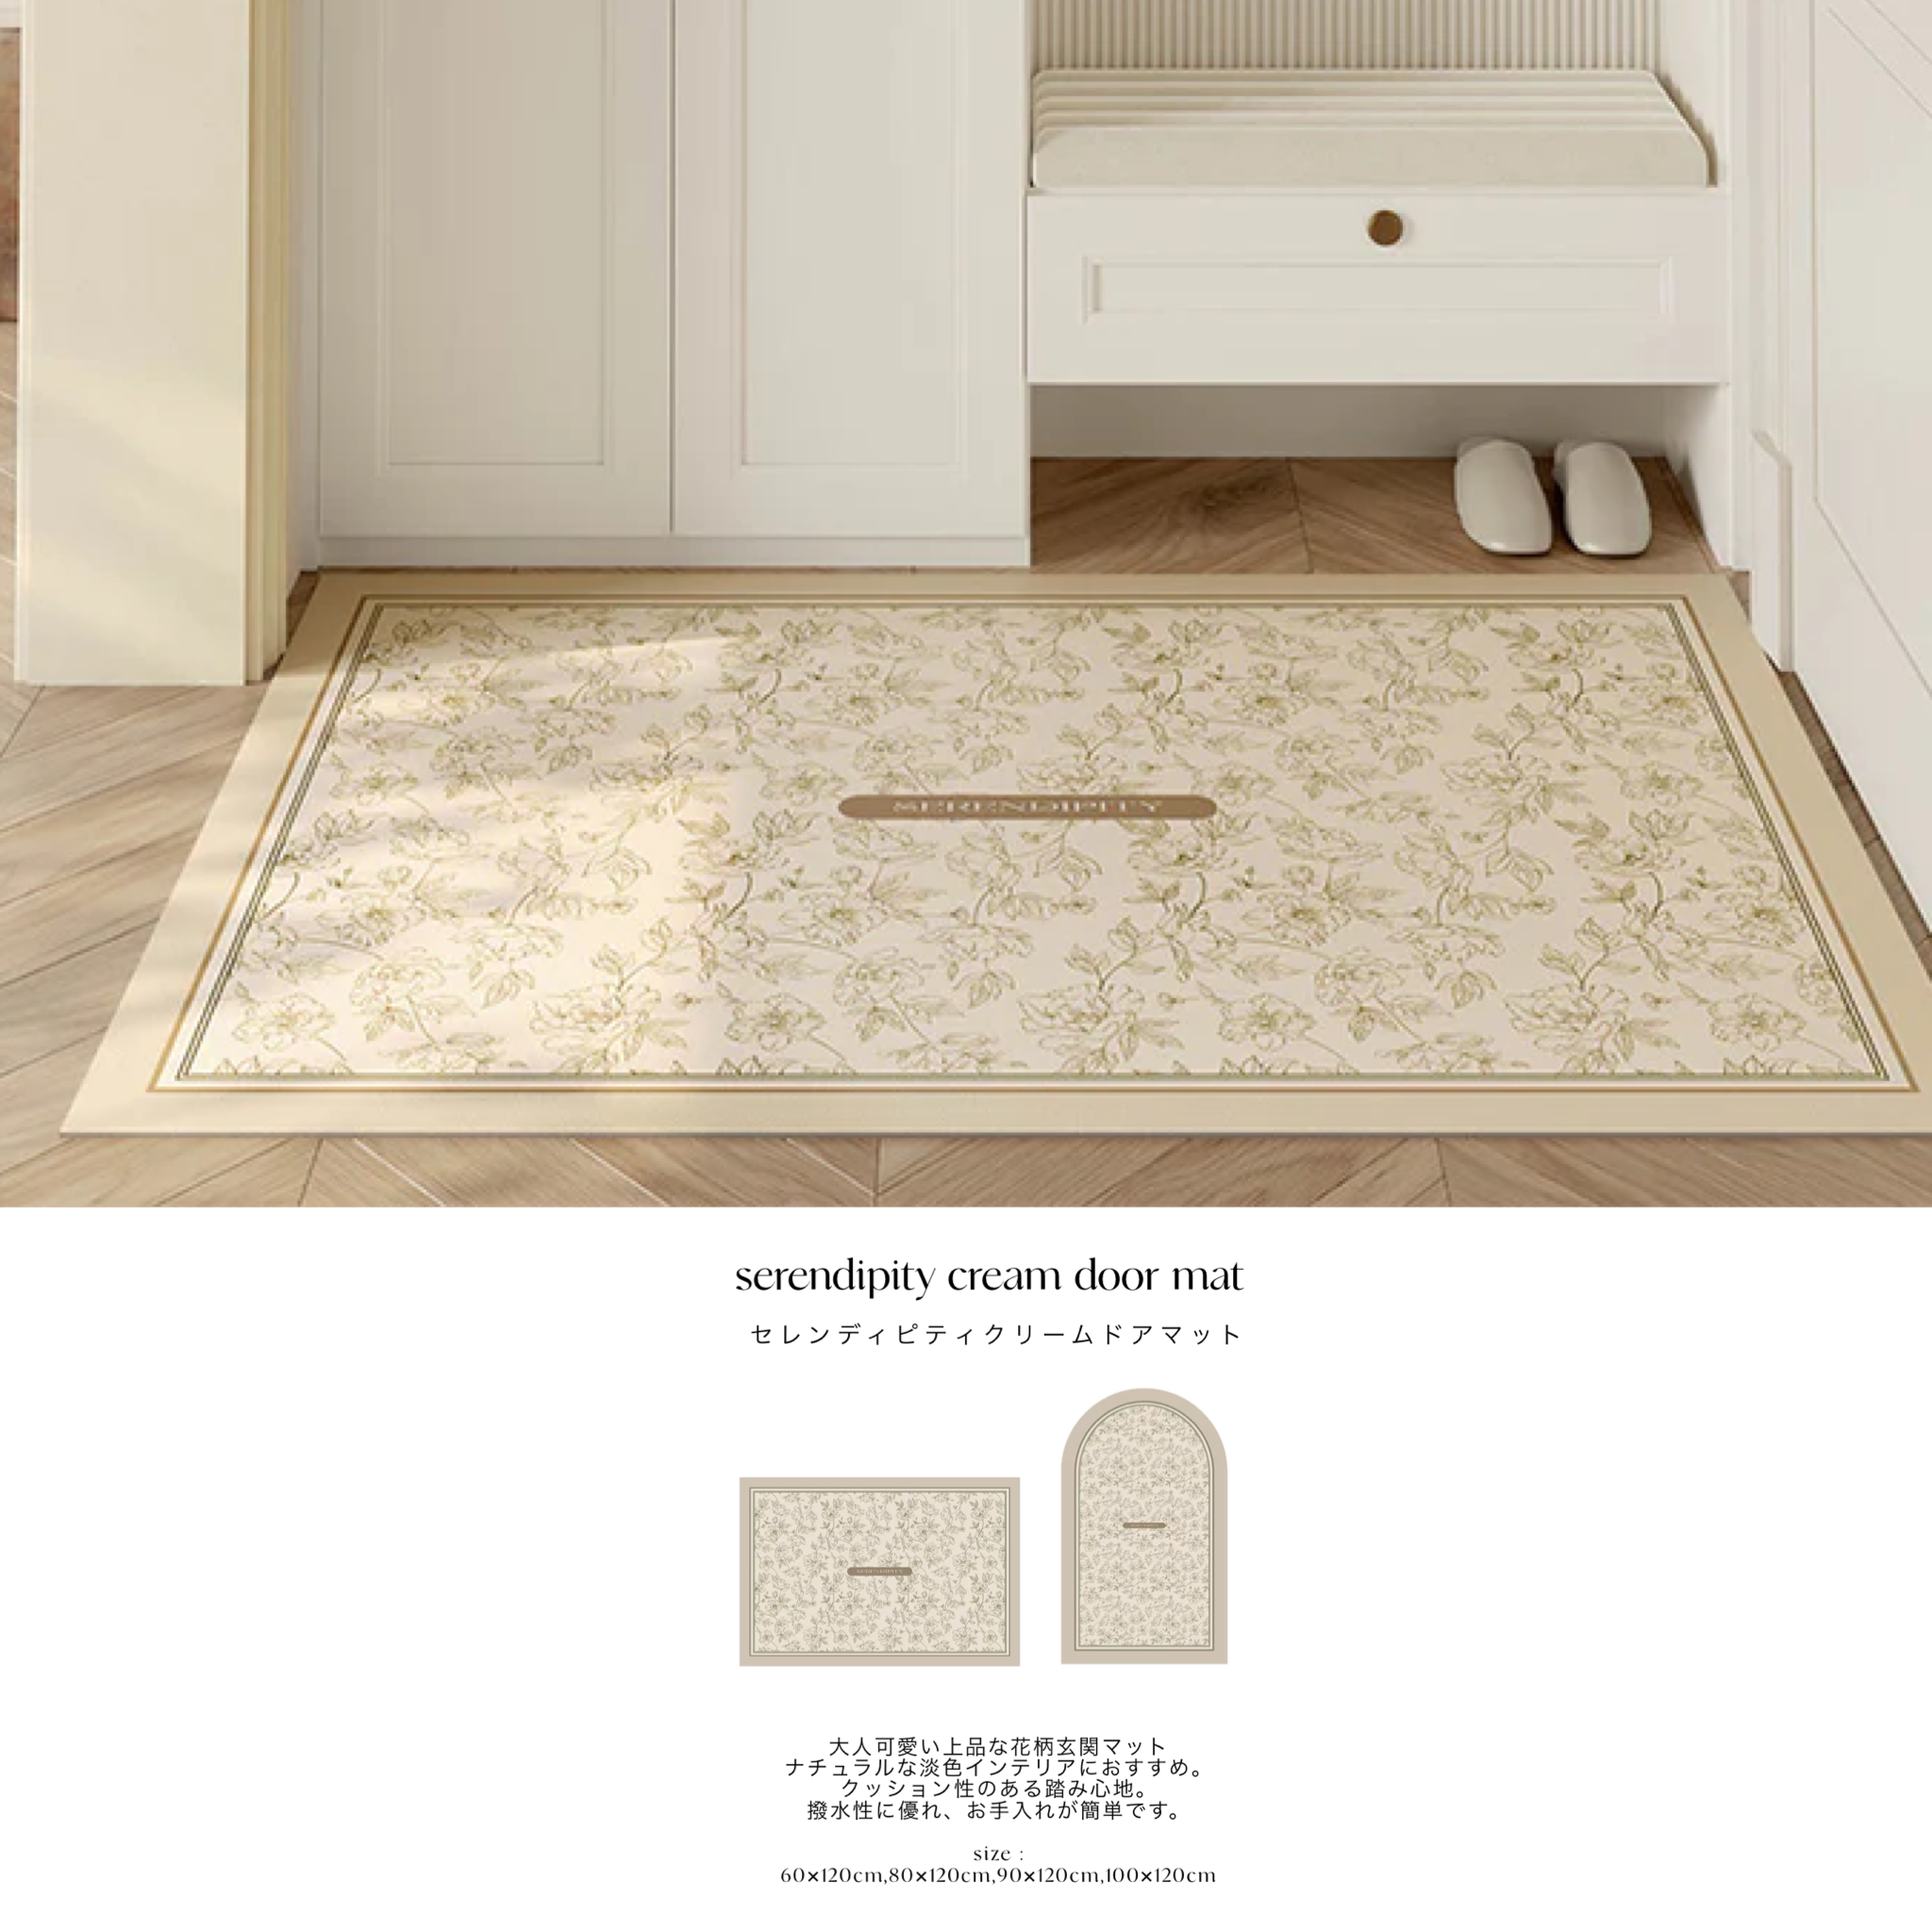 serendipity cream door mat